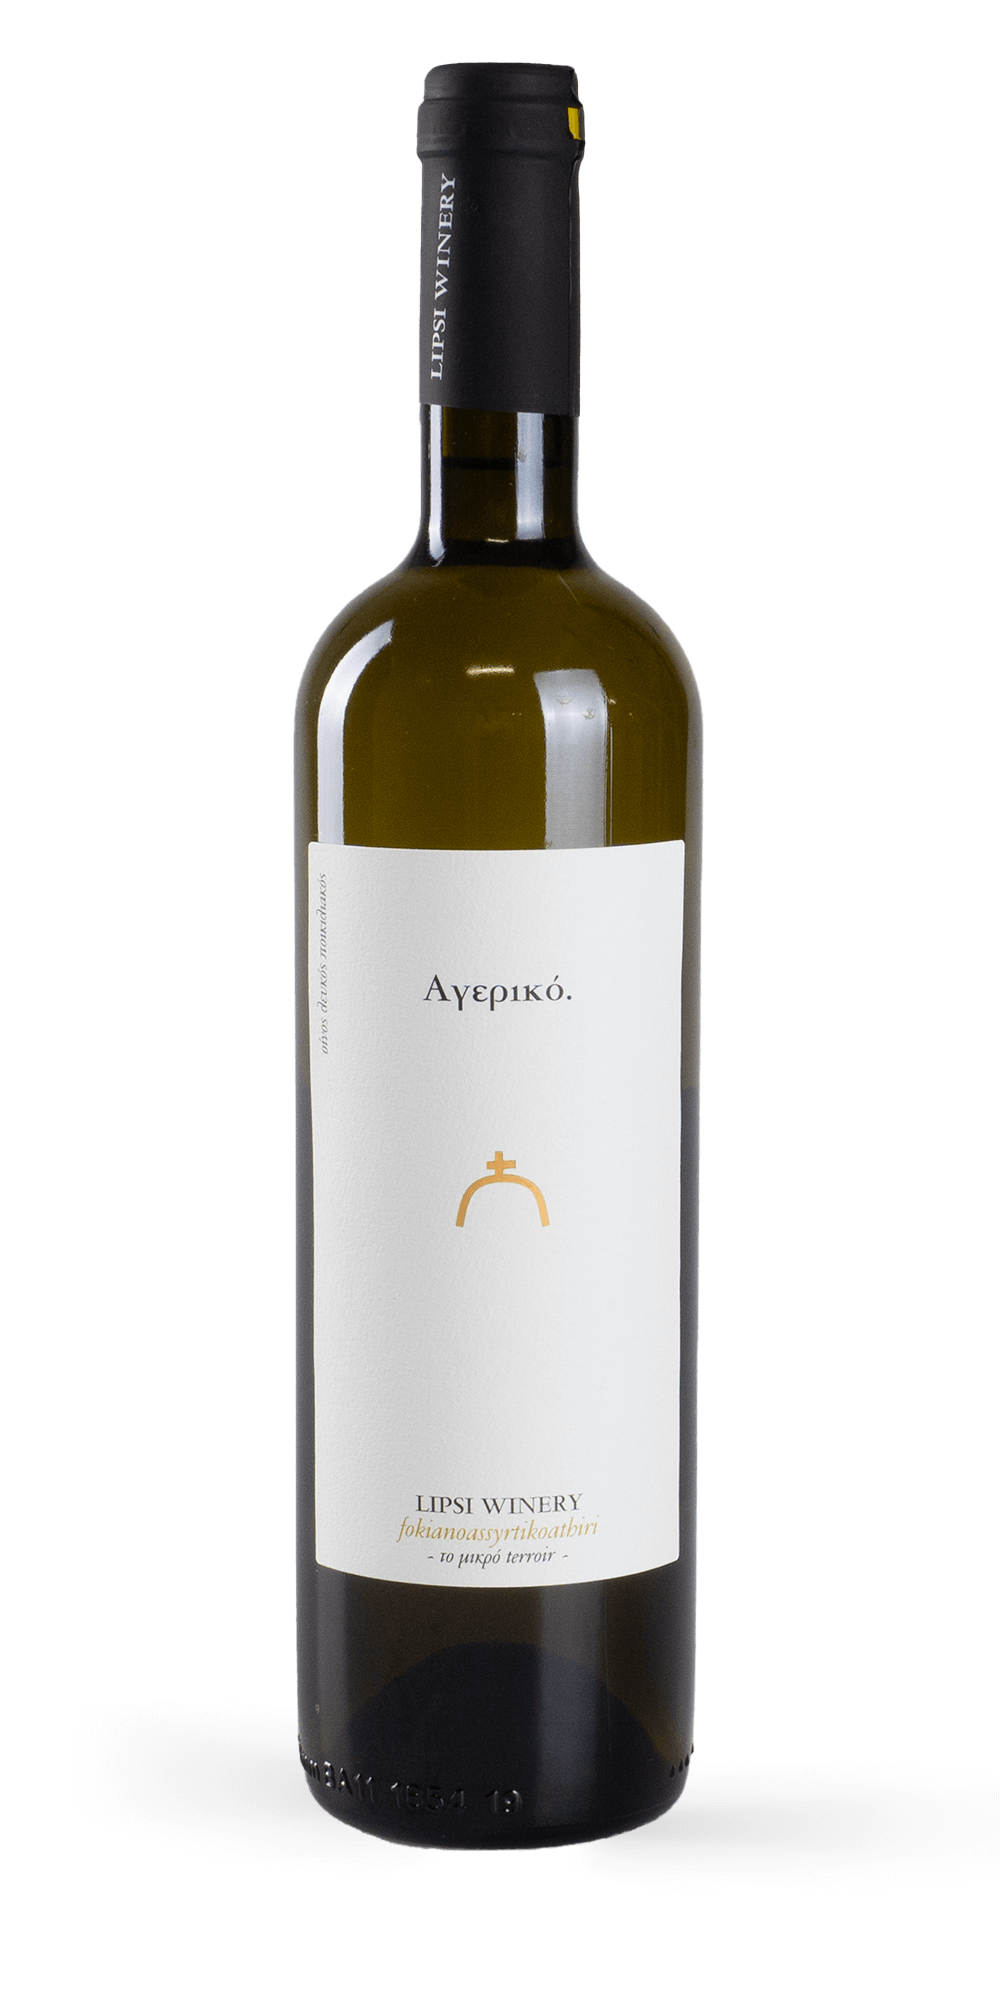 Ageriko 2019 - Lipsi Winery